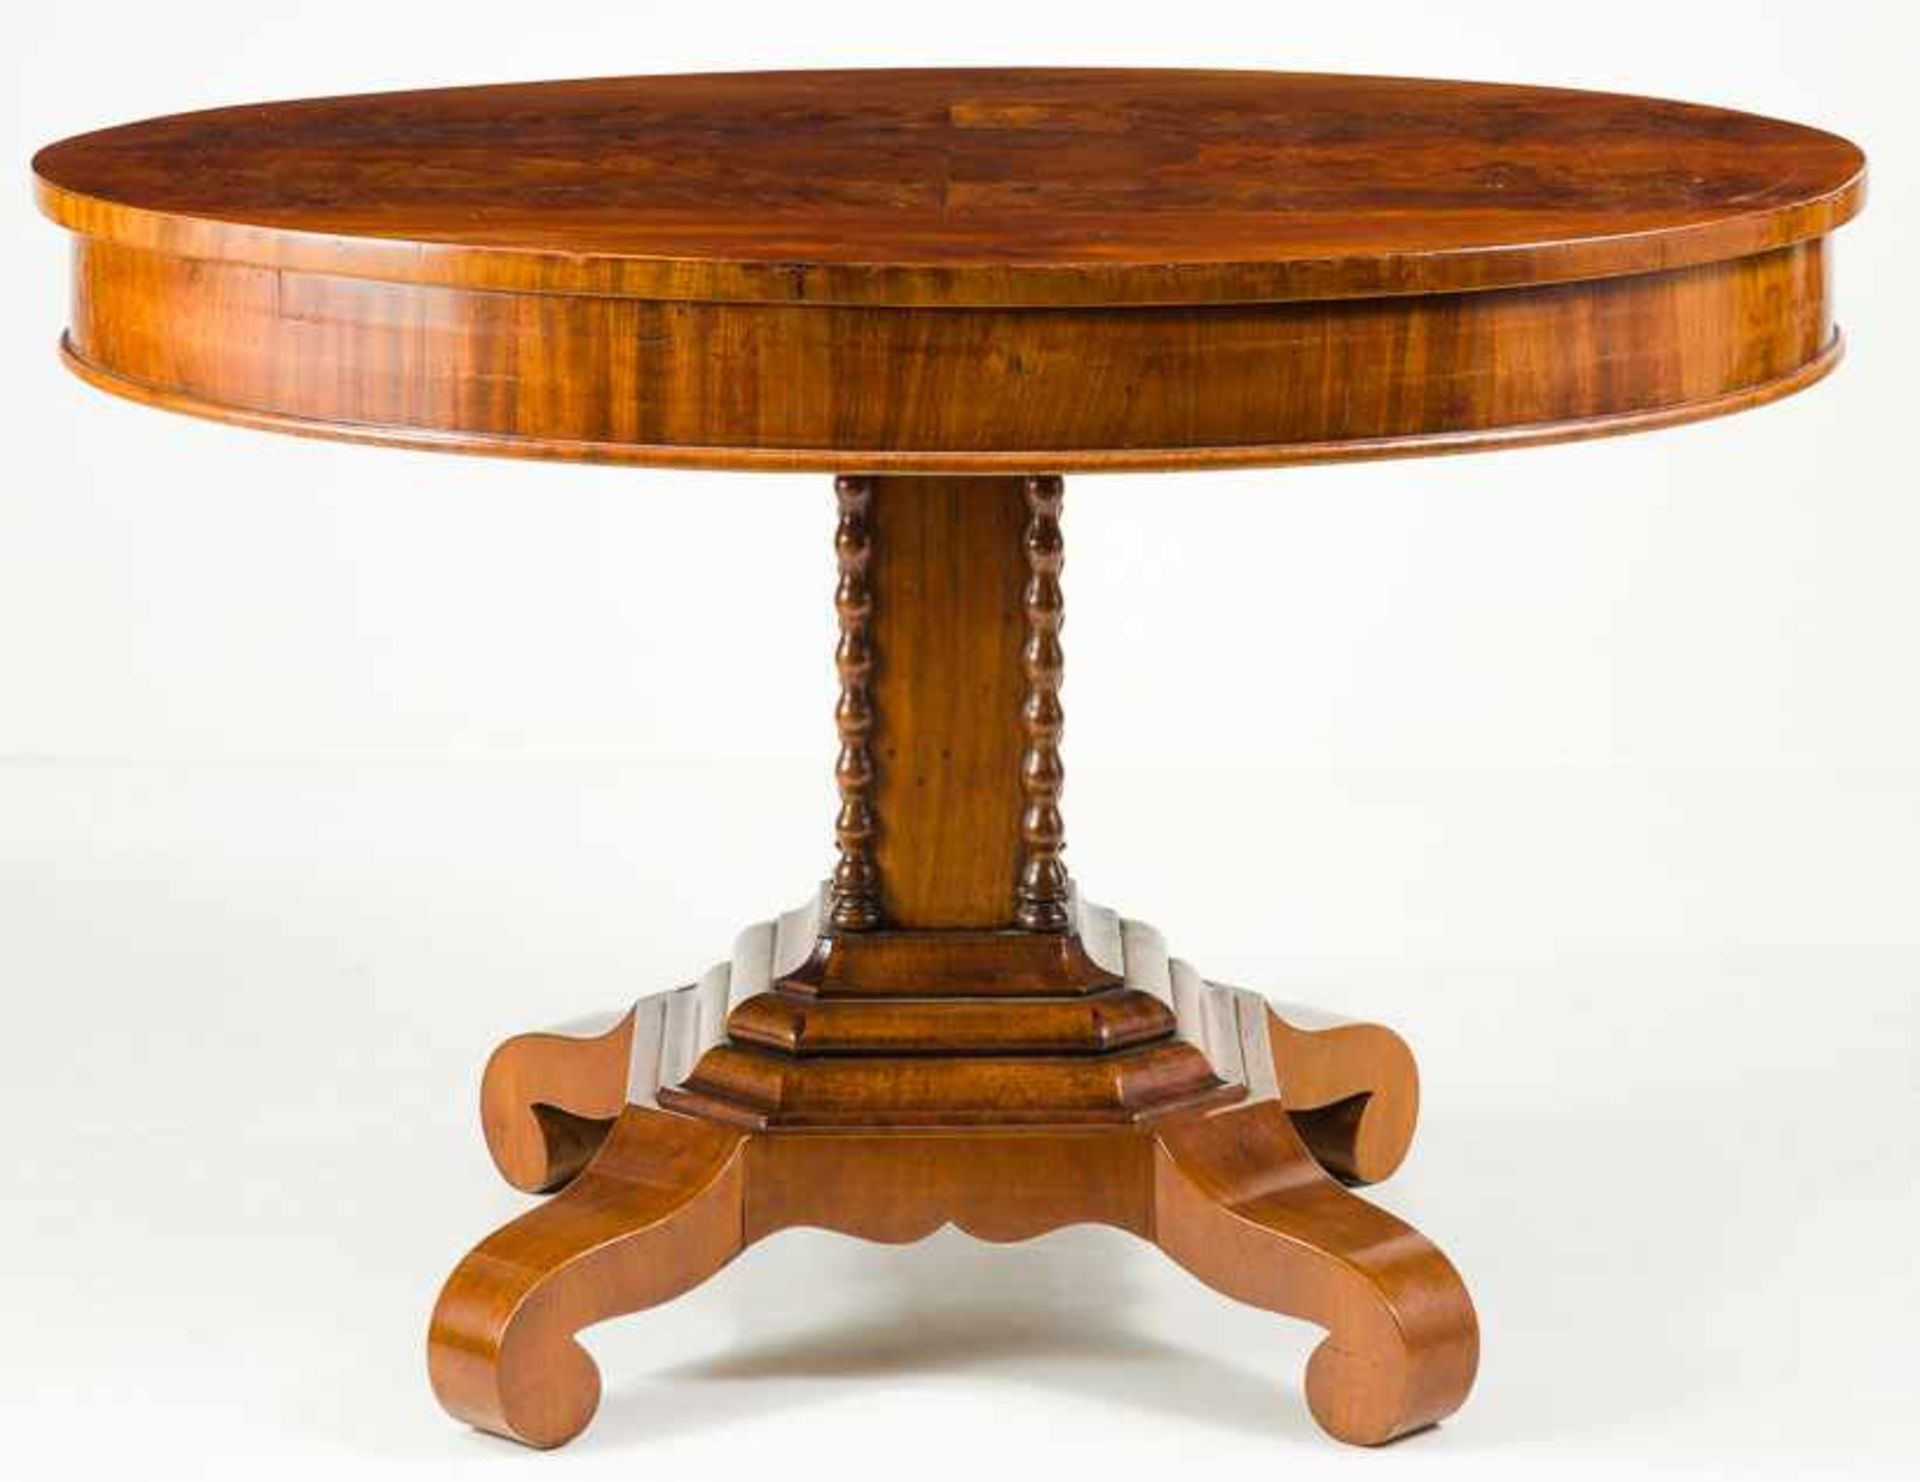 Ovaler Spätbiedermeier-TischNorddeutsch, um 1850Mahagoni. Vorkragende Platte auf breitem